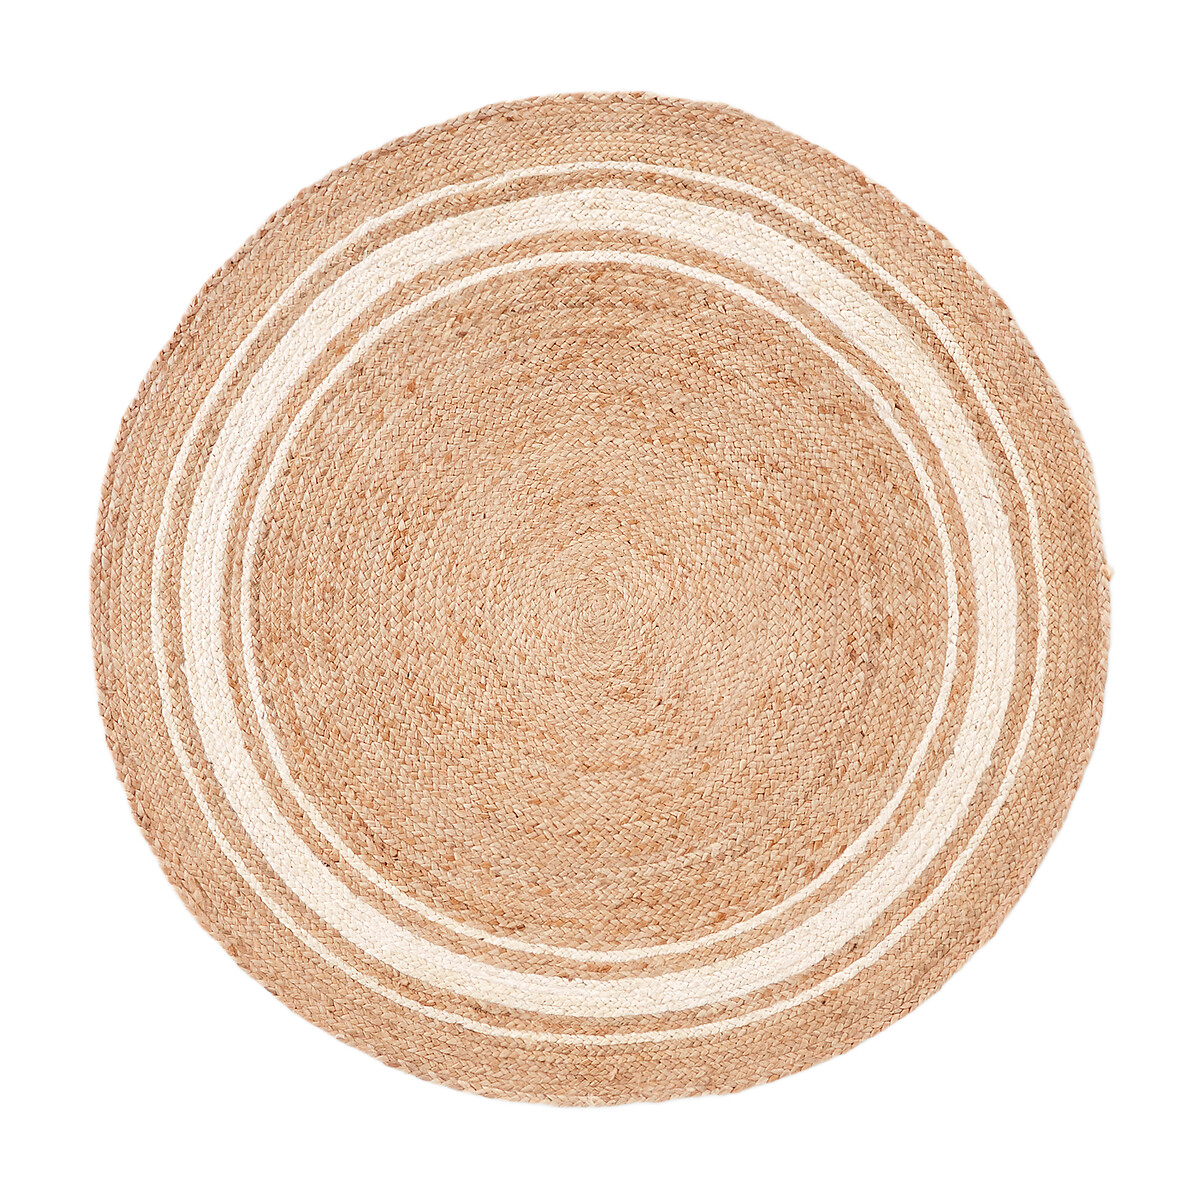 Ковер LA REDOUTE INTERIEURS Из джута круглый Aftas диаметр 200 см бежевый, размер диаметр 200 см - фото 2